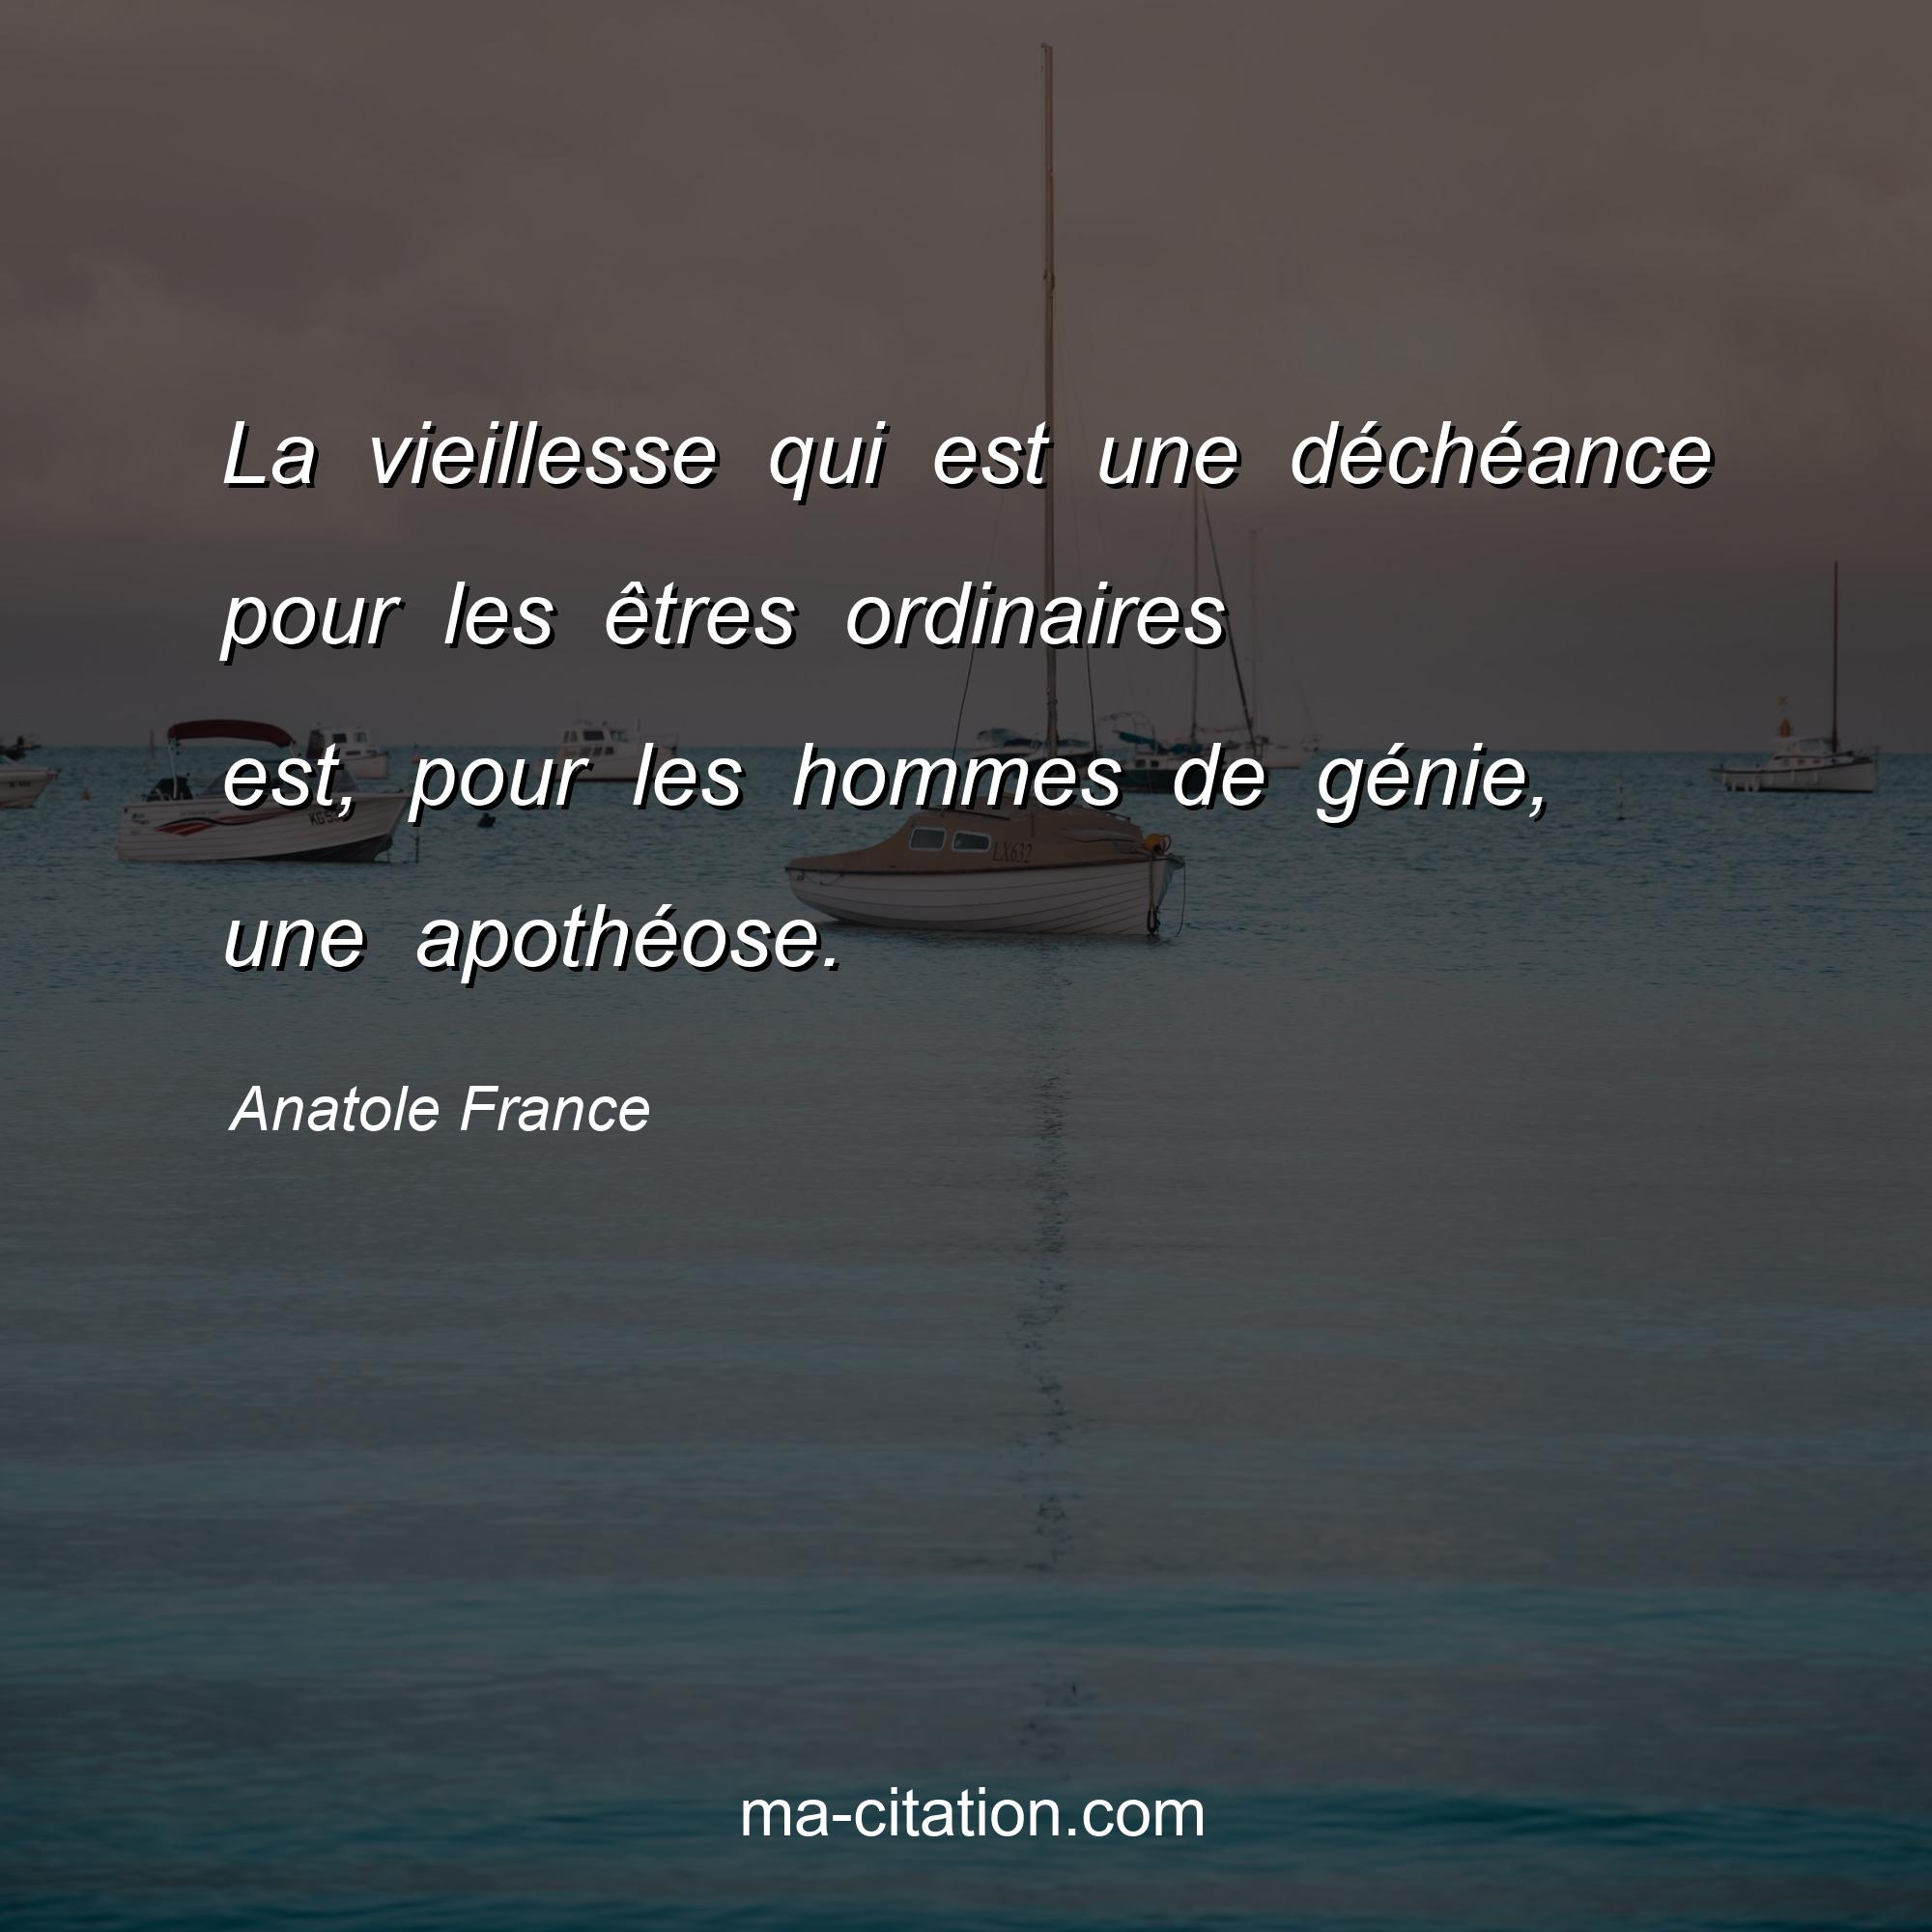 Anatole France : La vieillesse qui est une déchéance pour les êtres ordinaires est, pour les hommes de génie, une apothéose.